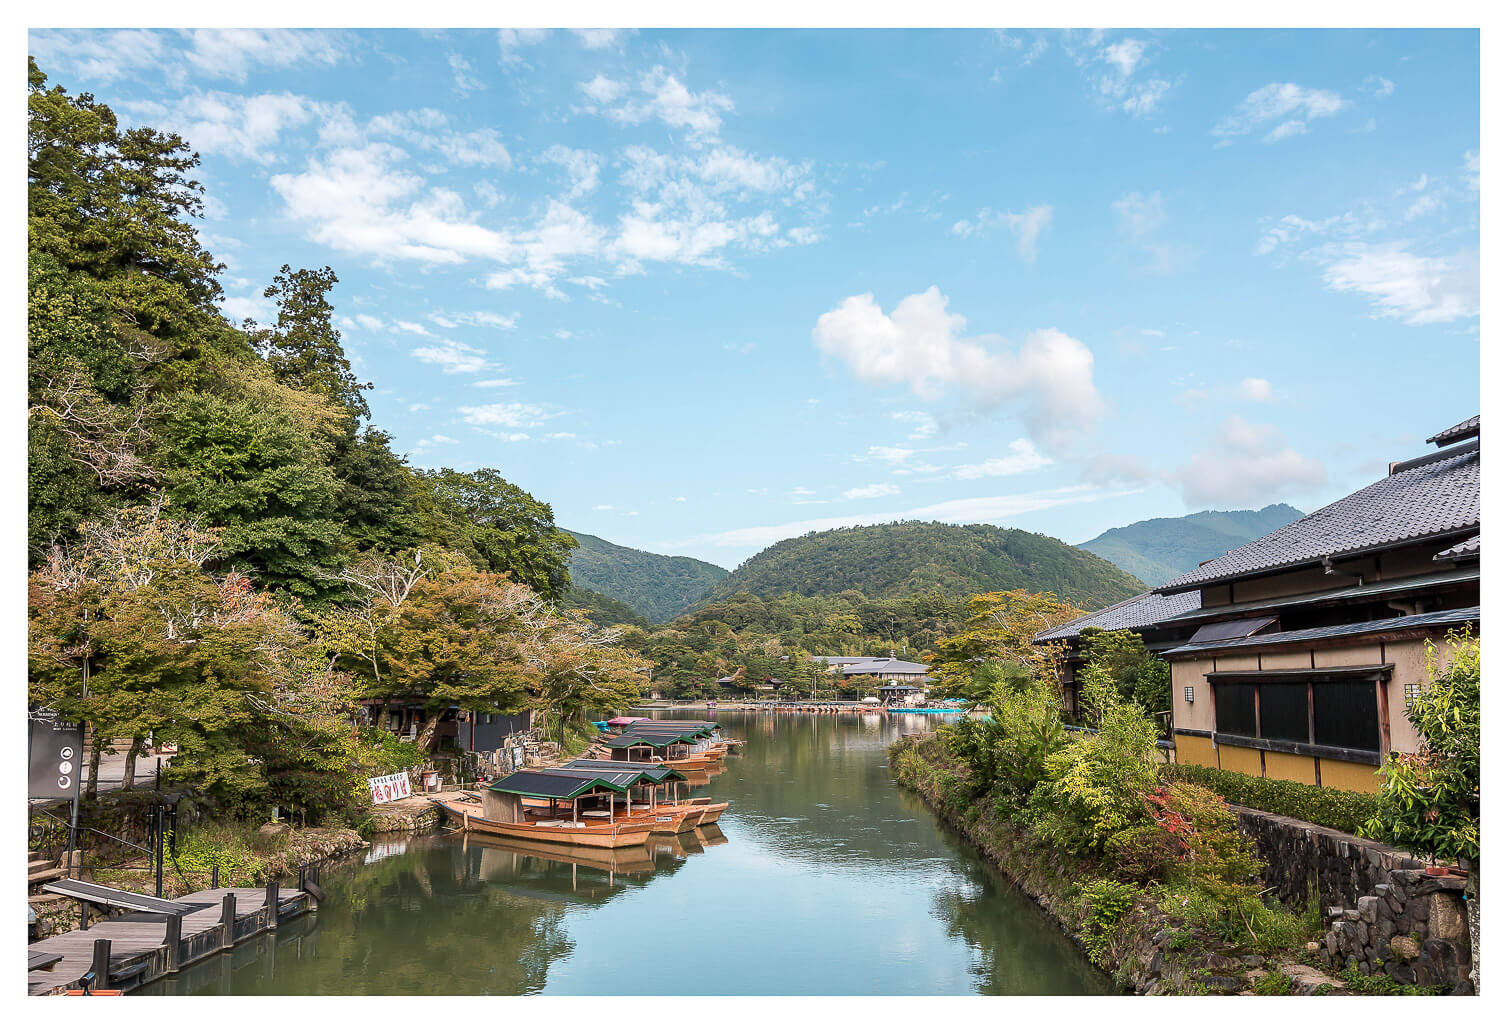 Top Things To Do In Arashiyama, Kyoto | Togetsukyo Bridge